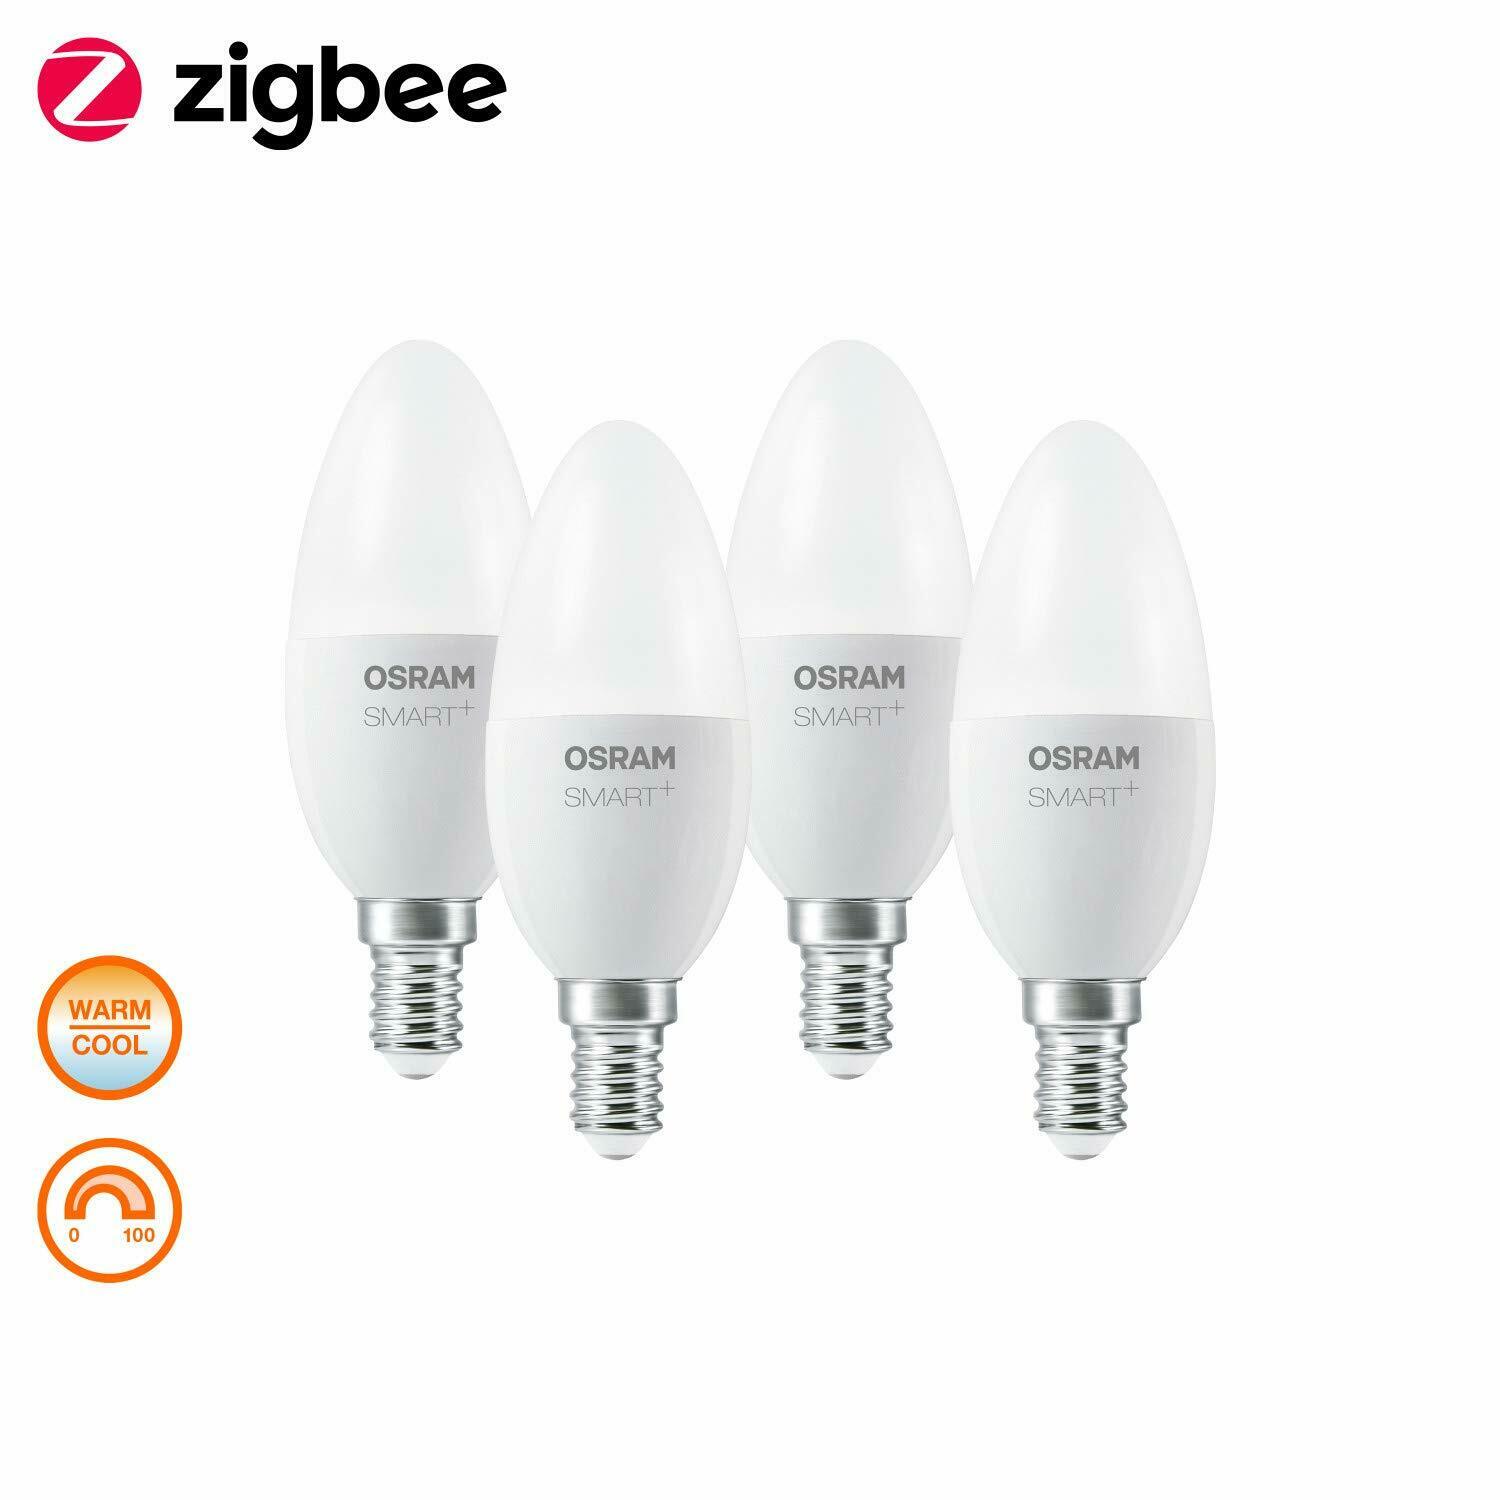 OSRAM Smart+LED, ZigBee Lamp with E14 Socket, 4PK Warm White to Daylight, No6730